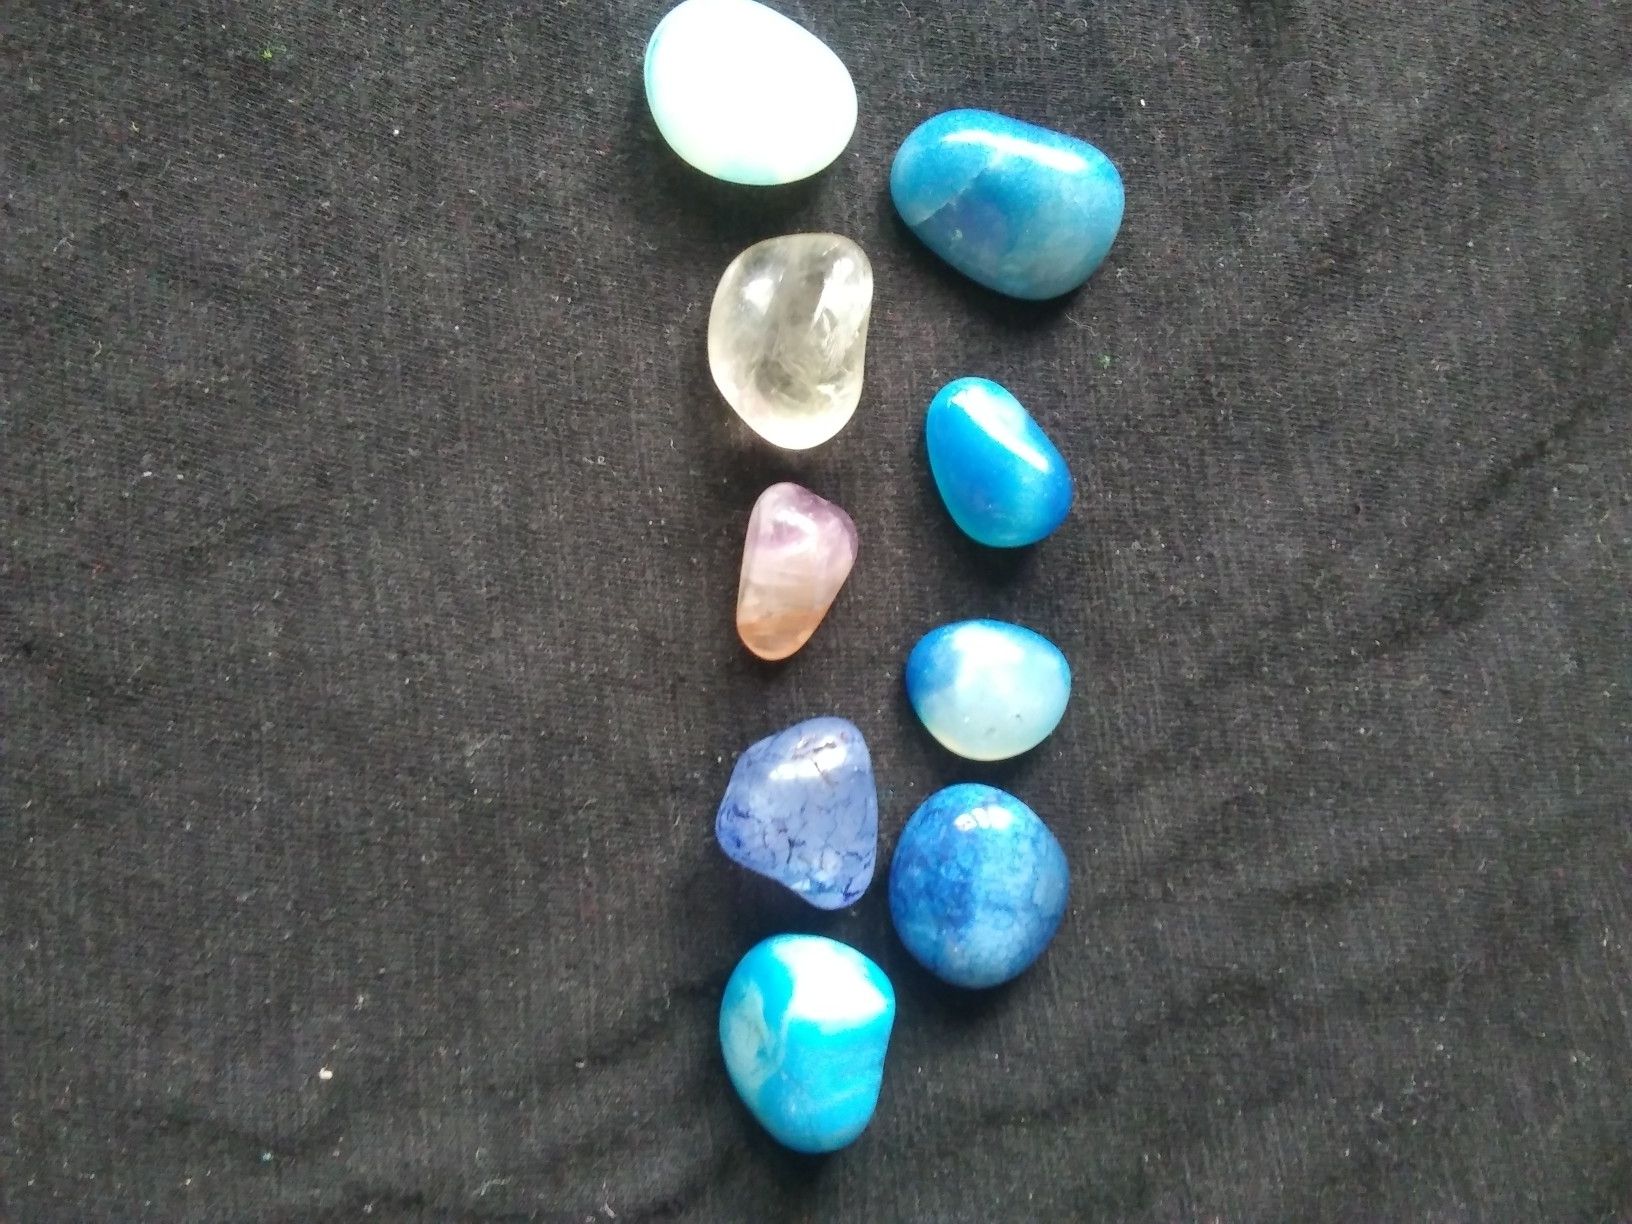 Crystal stones (quartz)